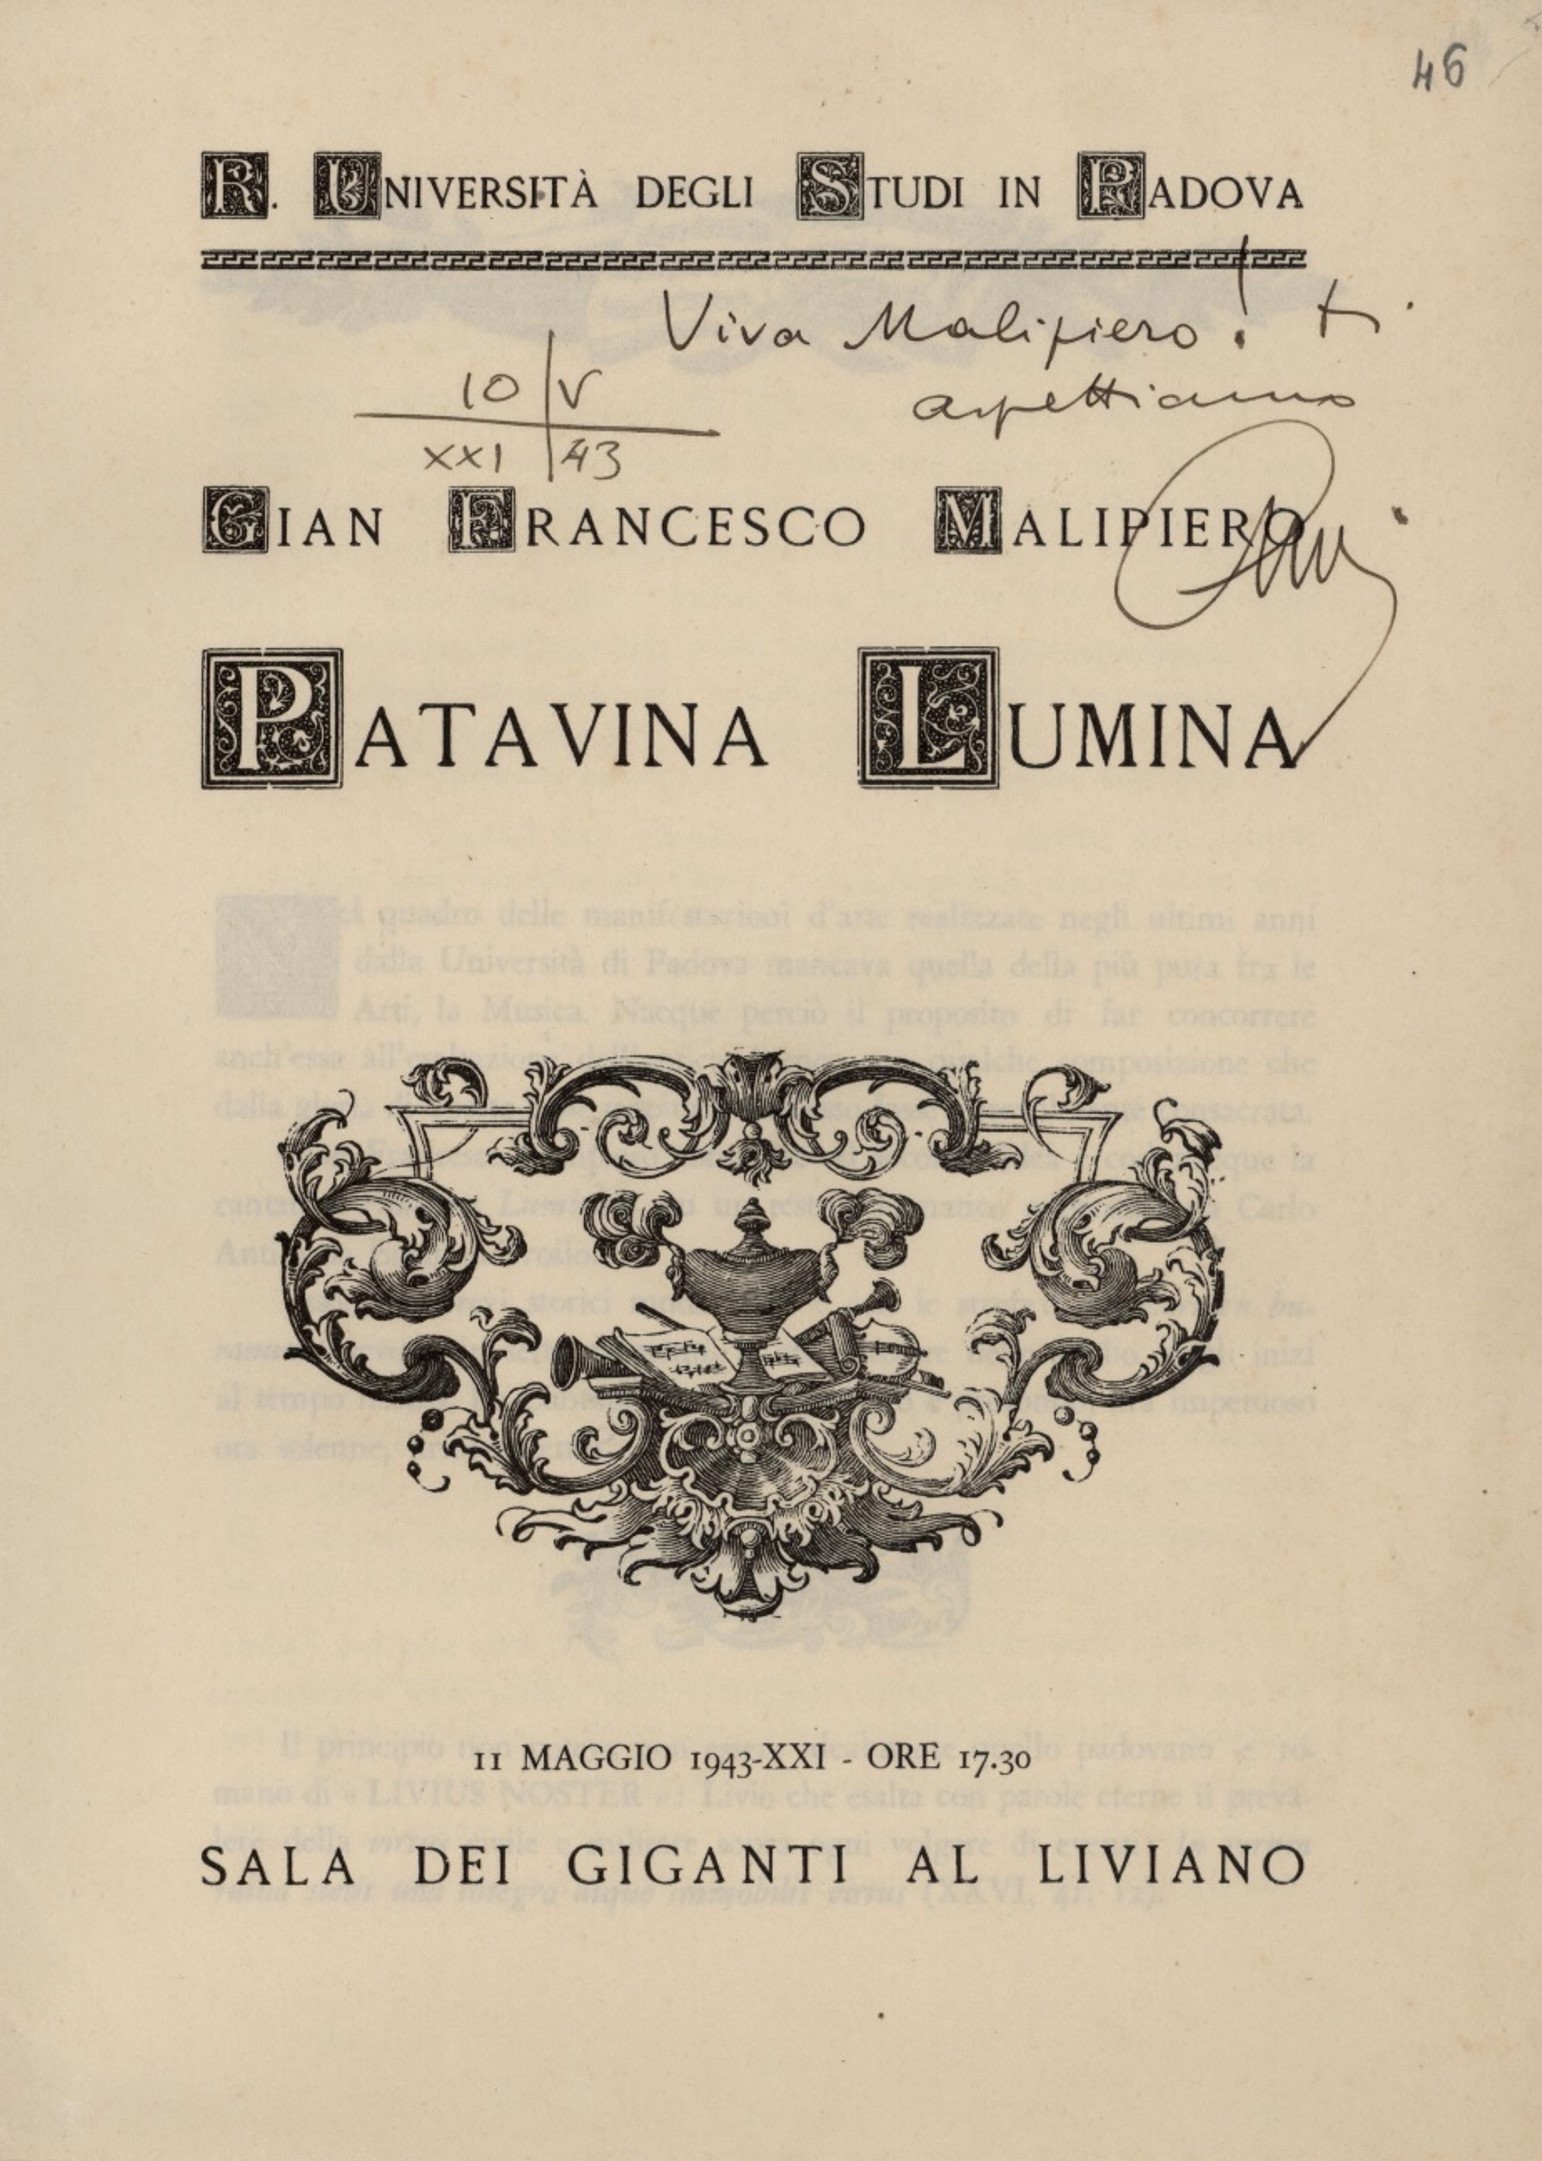 Patavina Lumina, "Viva Malipiero", FC